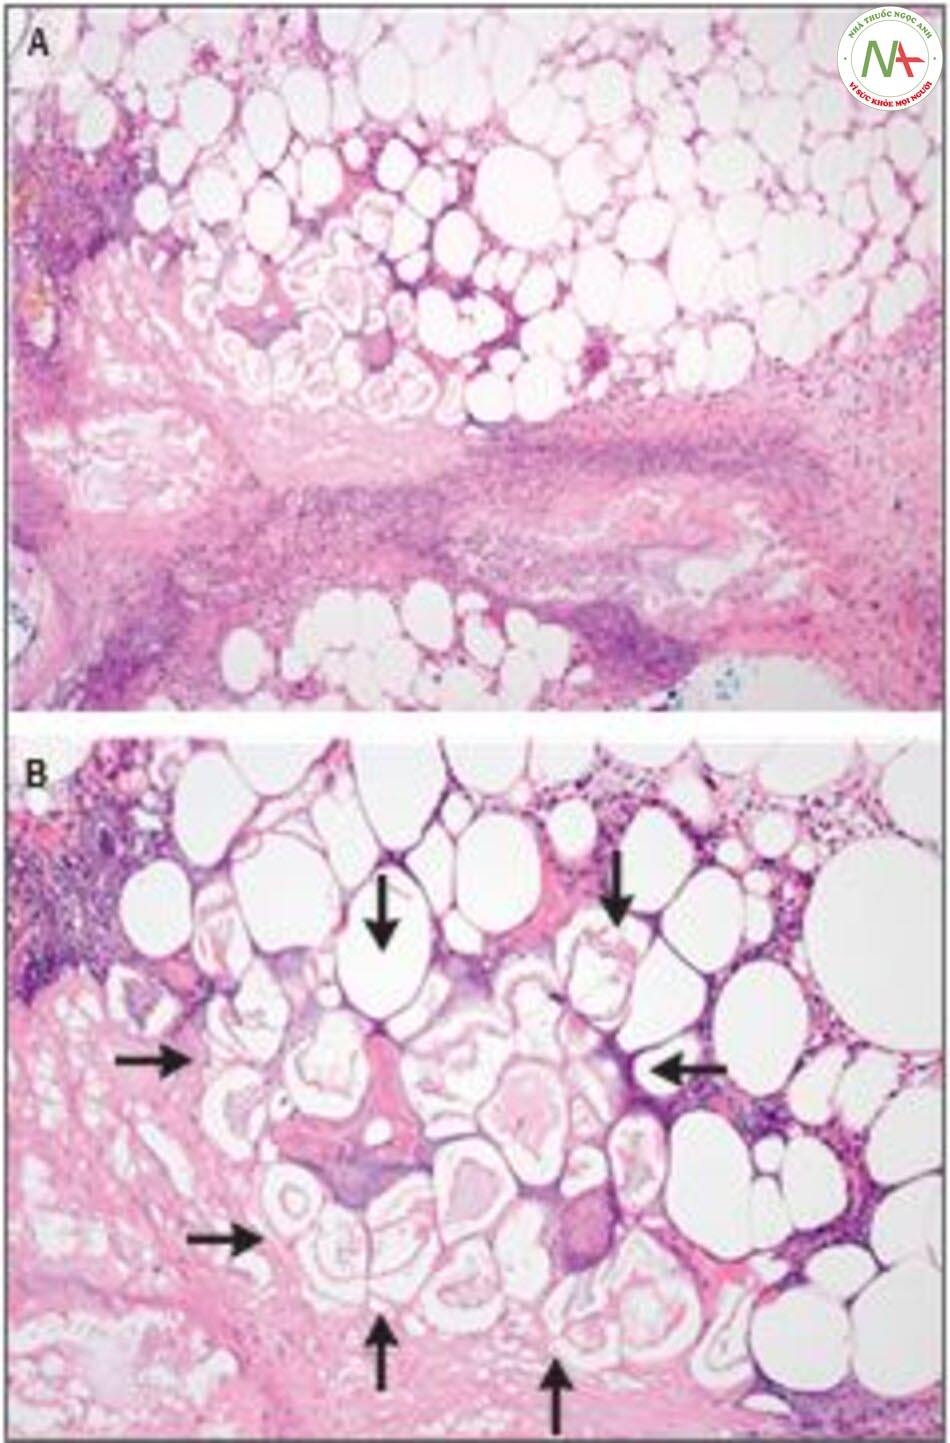 Hình 3. Mẫu da sinh thiết. Nhuộm Hematoxylin và eosin thấy thùy viêm mô mỡ dưới da ảnh hưởng đến mô dưới da (A), với hoại tử chất béo và xà phòng hóa, đặc trưng bởi các tế bào mỡ ưa bazo và không nhân (B, mũi tên).